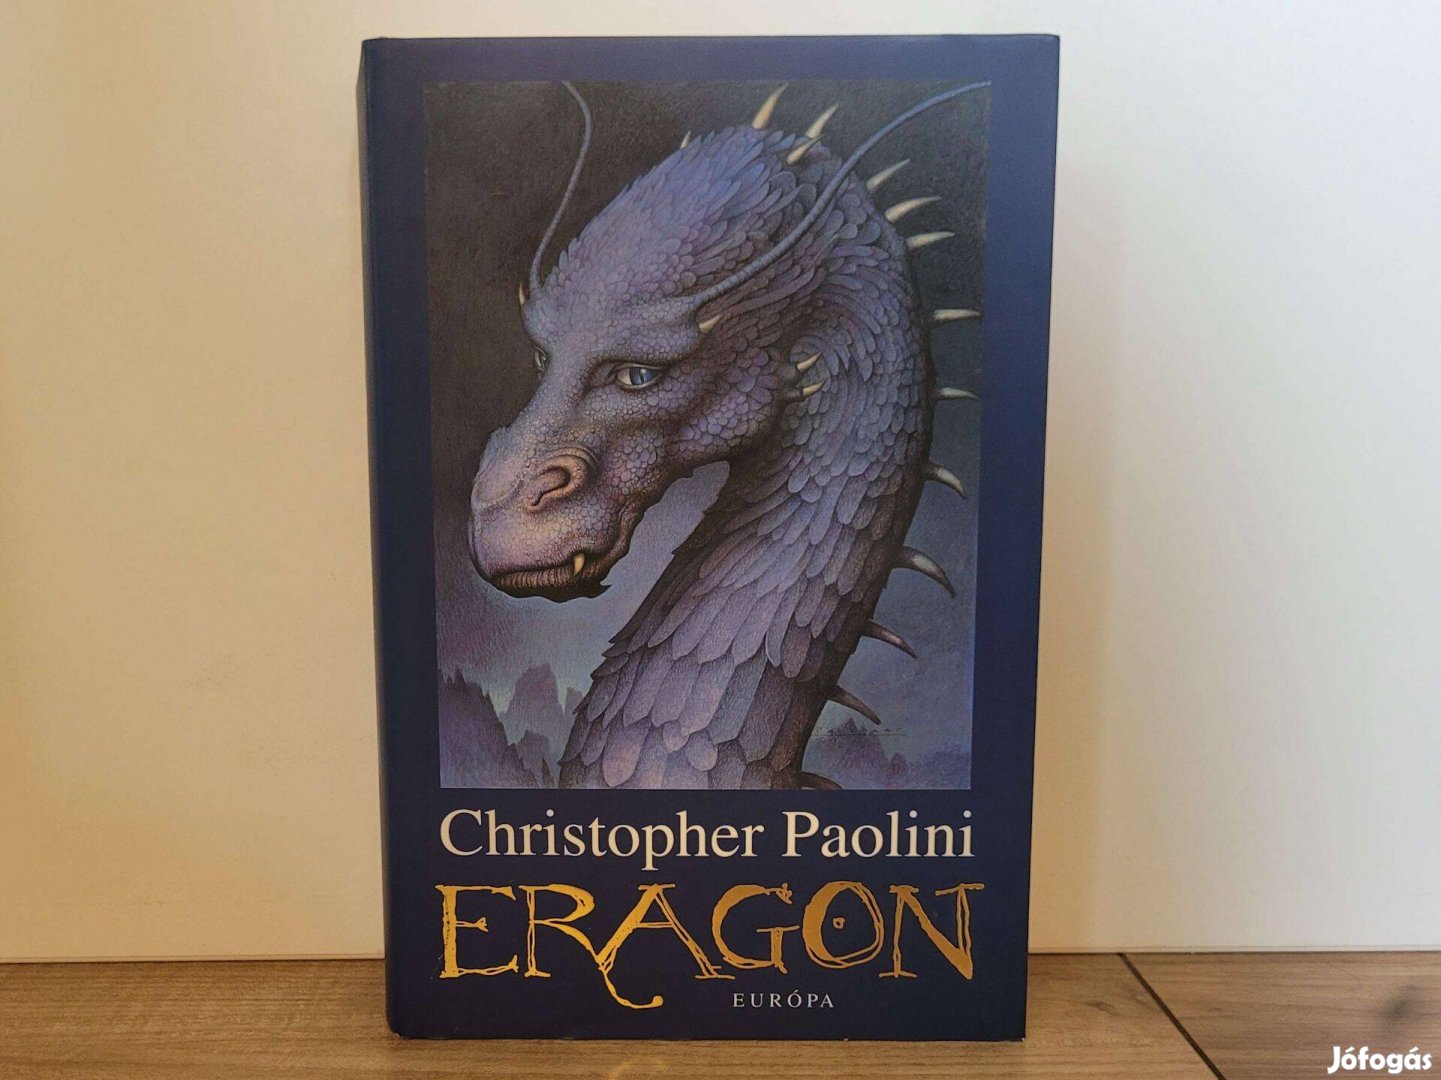 Eragon (Az örökség 1) - Christopher Paolini könyv eladó